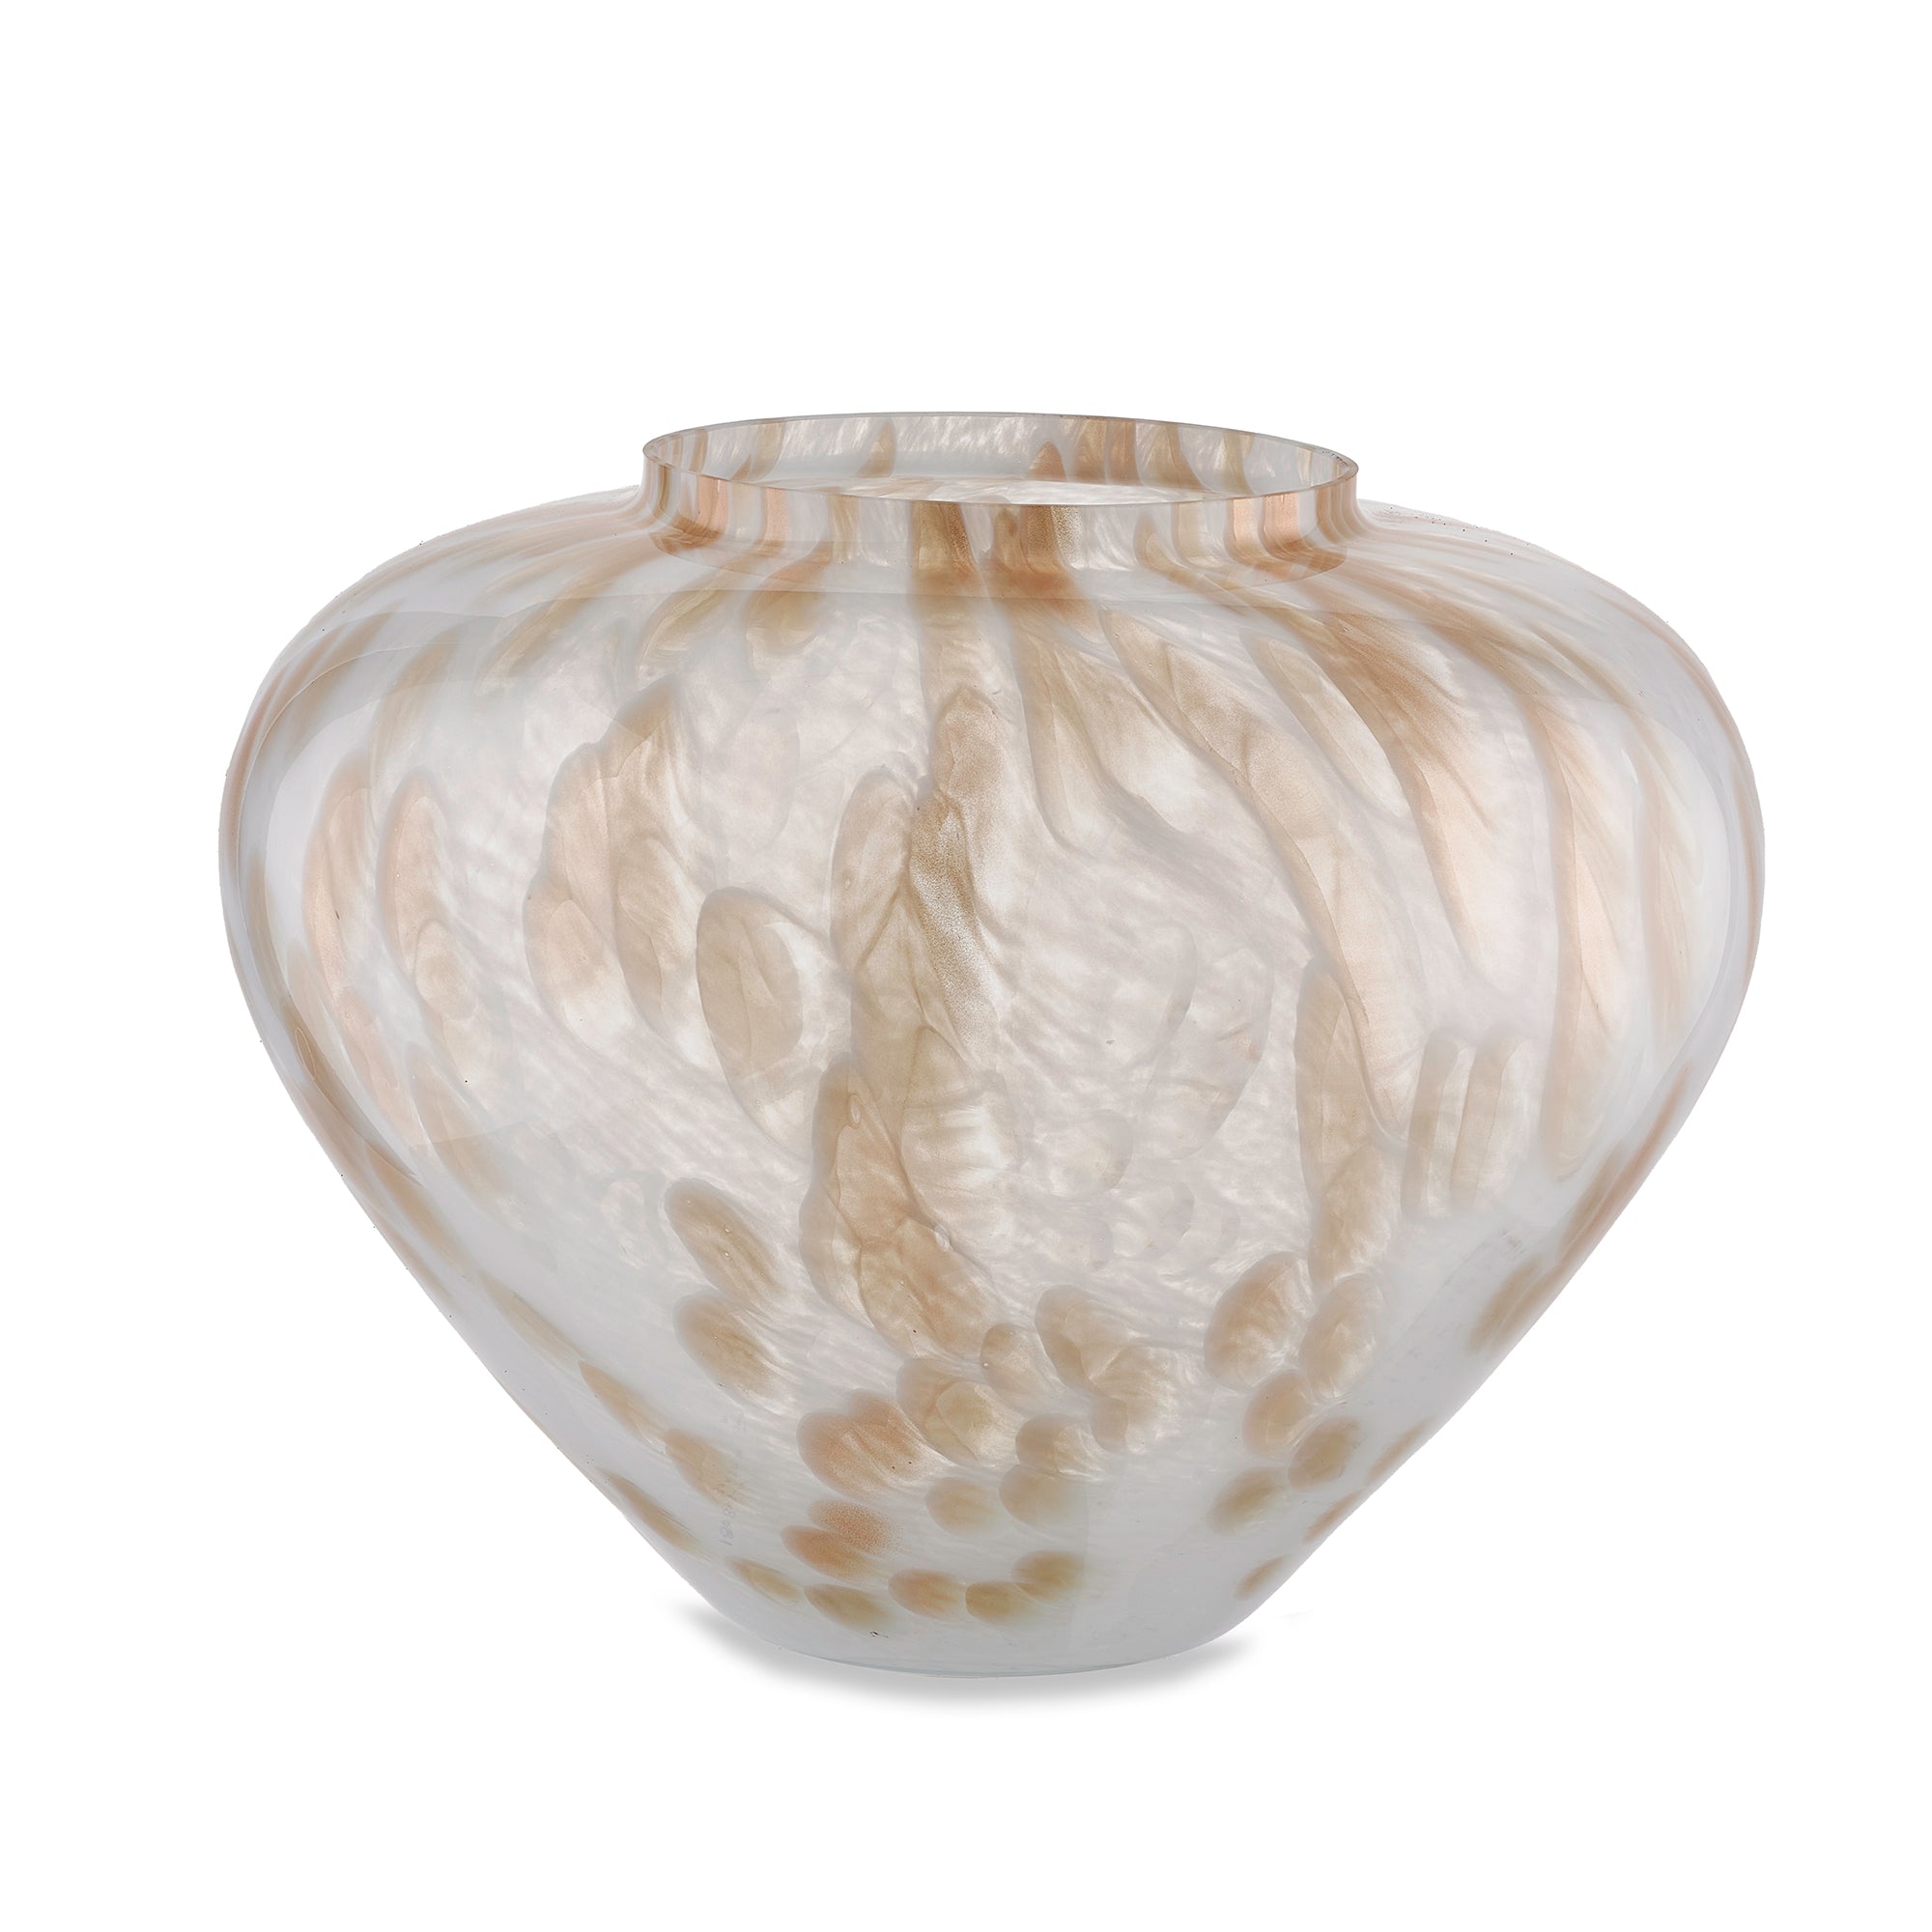 Jarrón PANDORA blanco hecho a mano en cristal de Murano